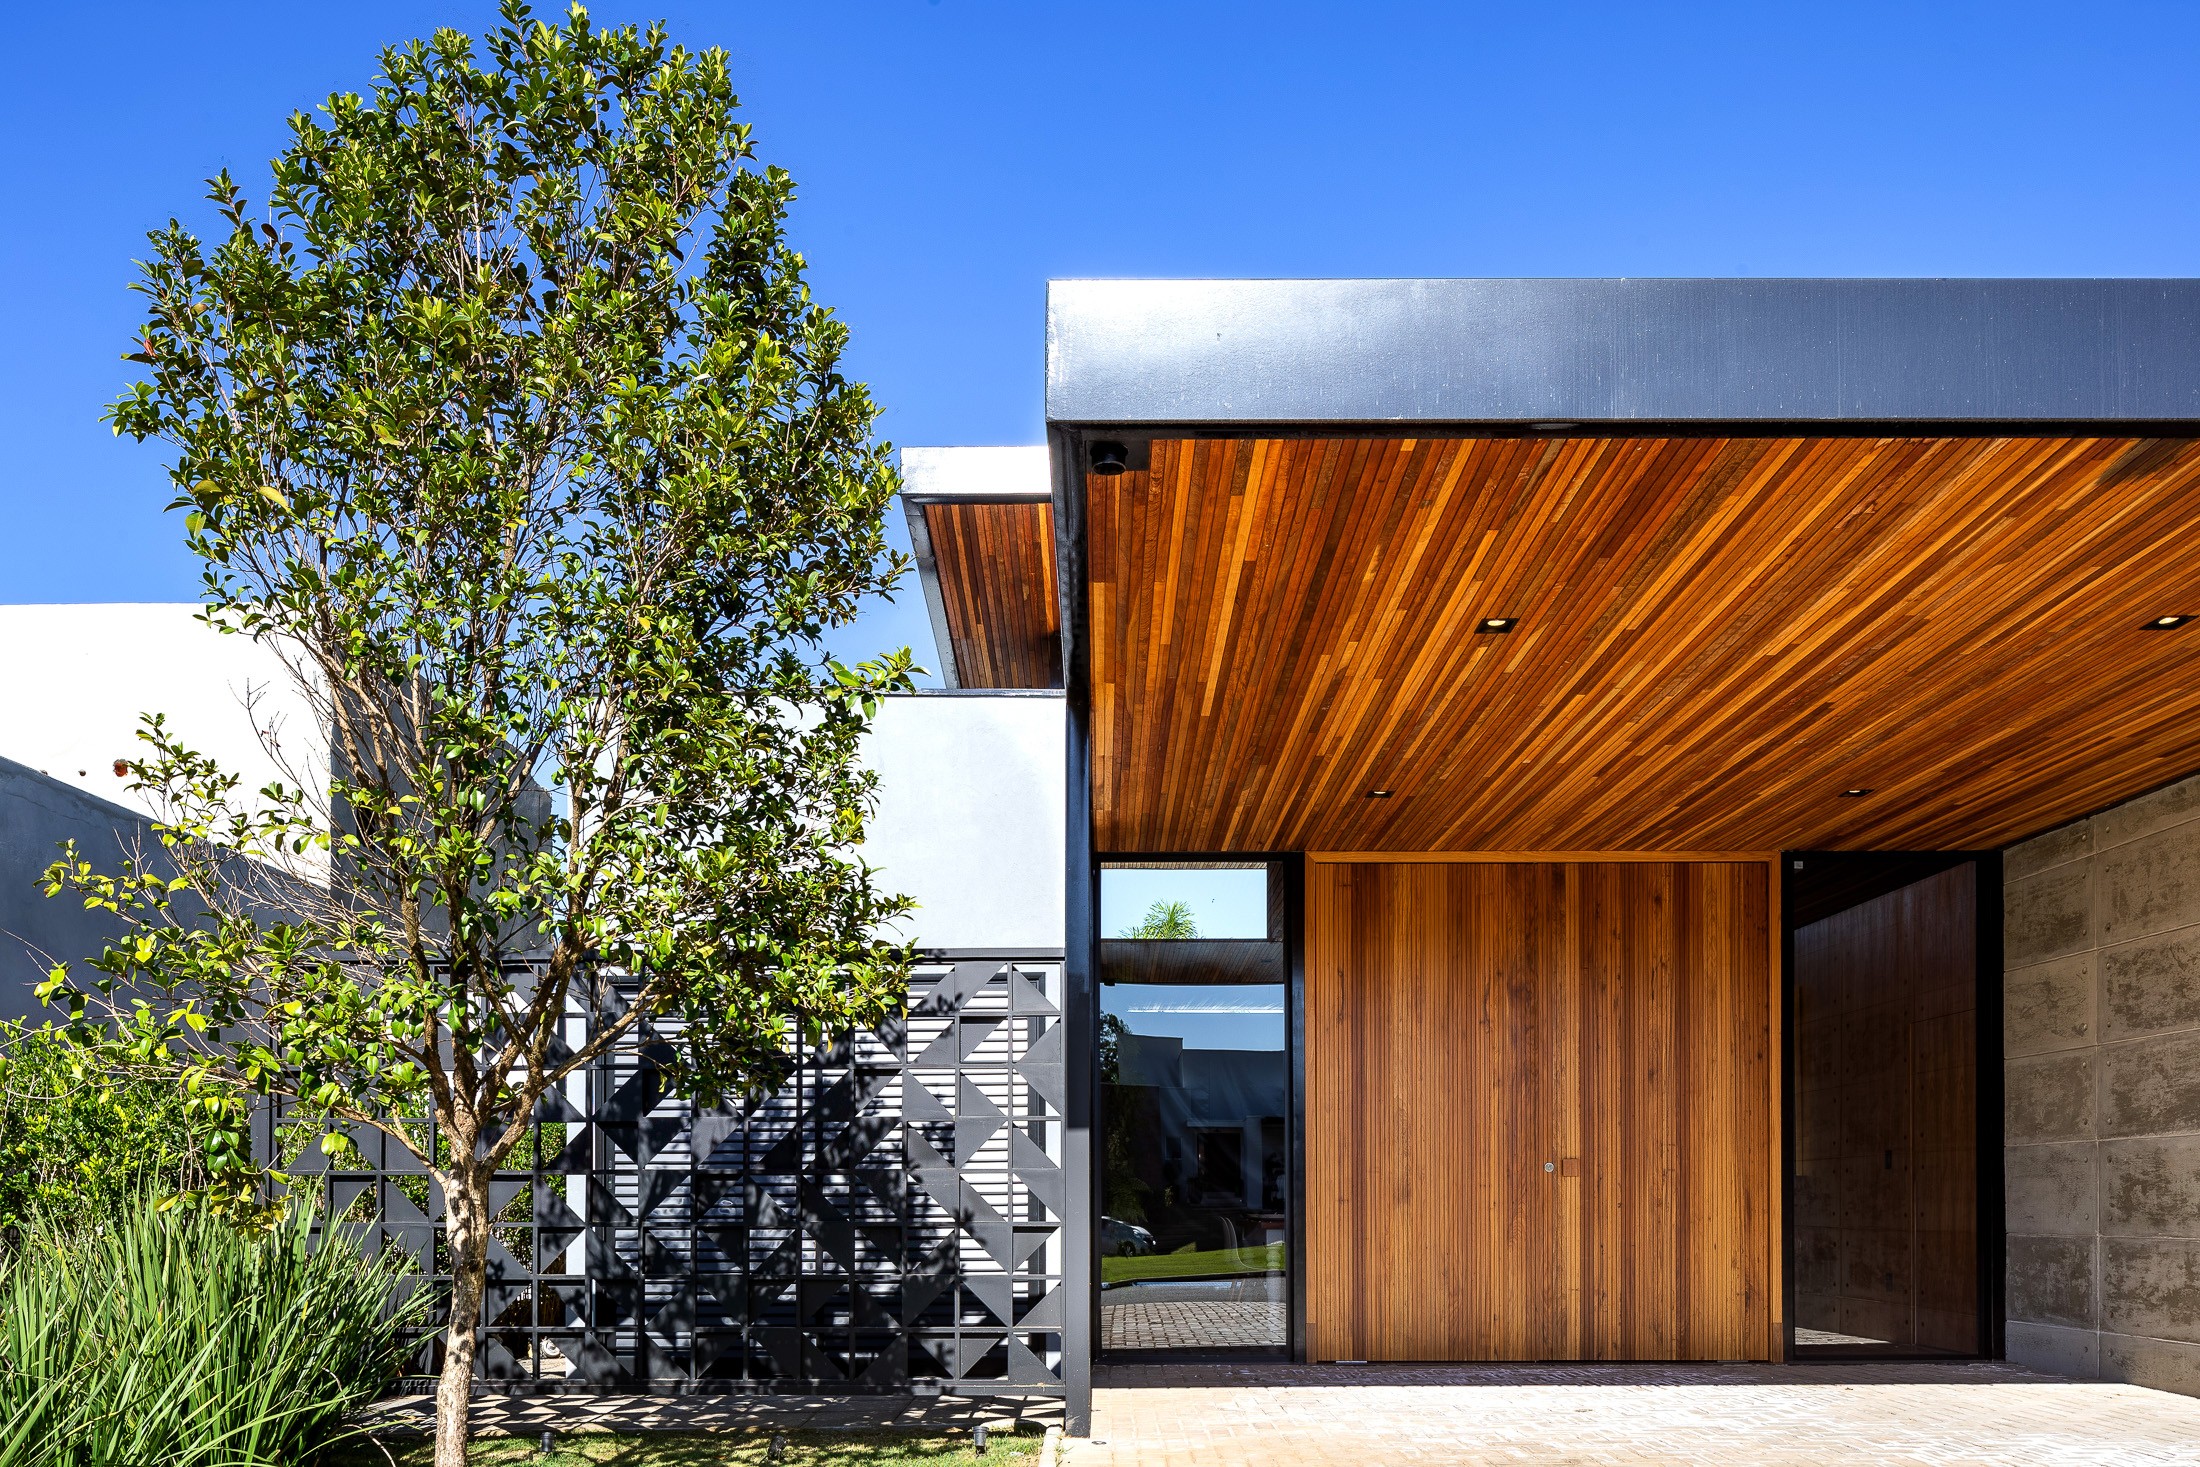 Casa térrea de 202 m² mistura concreto, aço e madeira  (Foto: Leonardo Giantomasi)